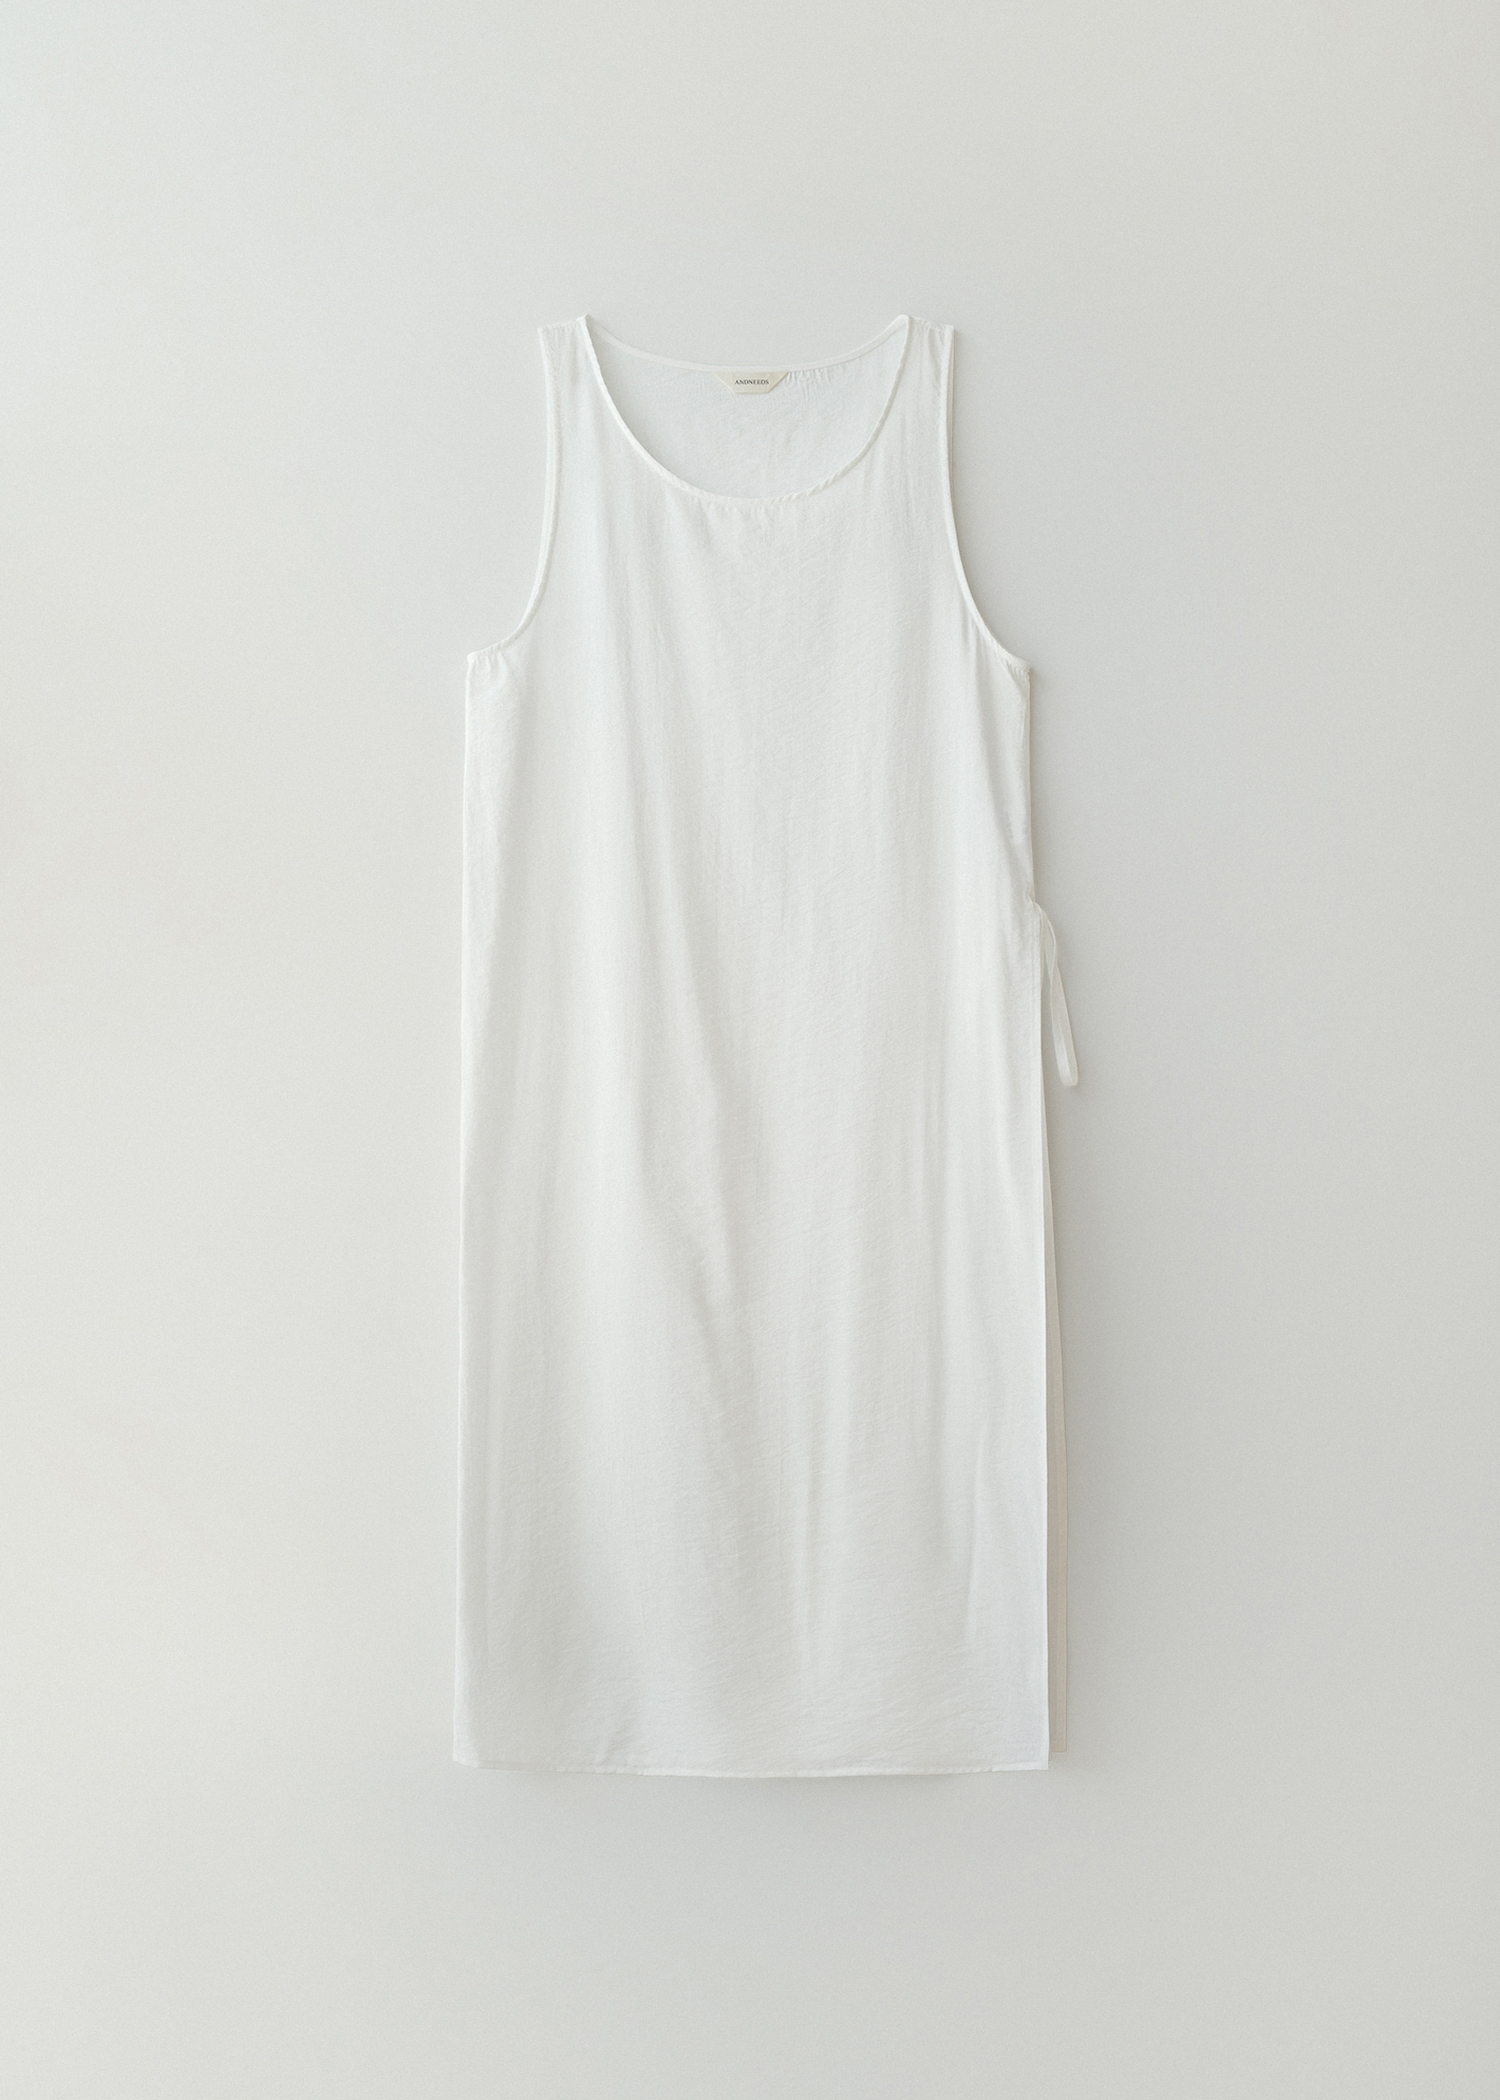 [4/24 순차발송 - 4차] Sheer layered dress (white)